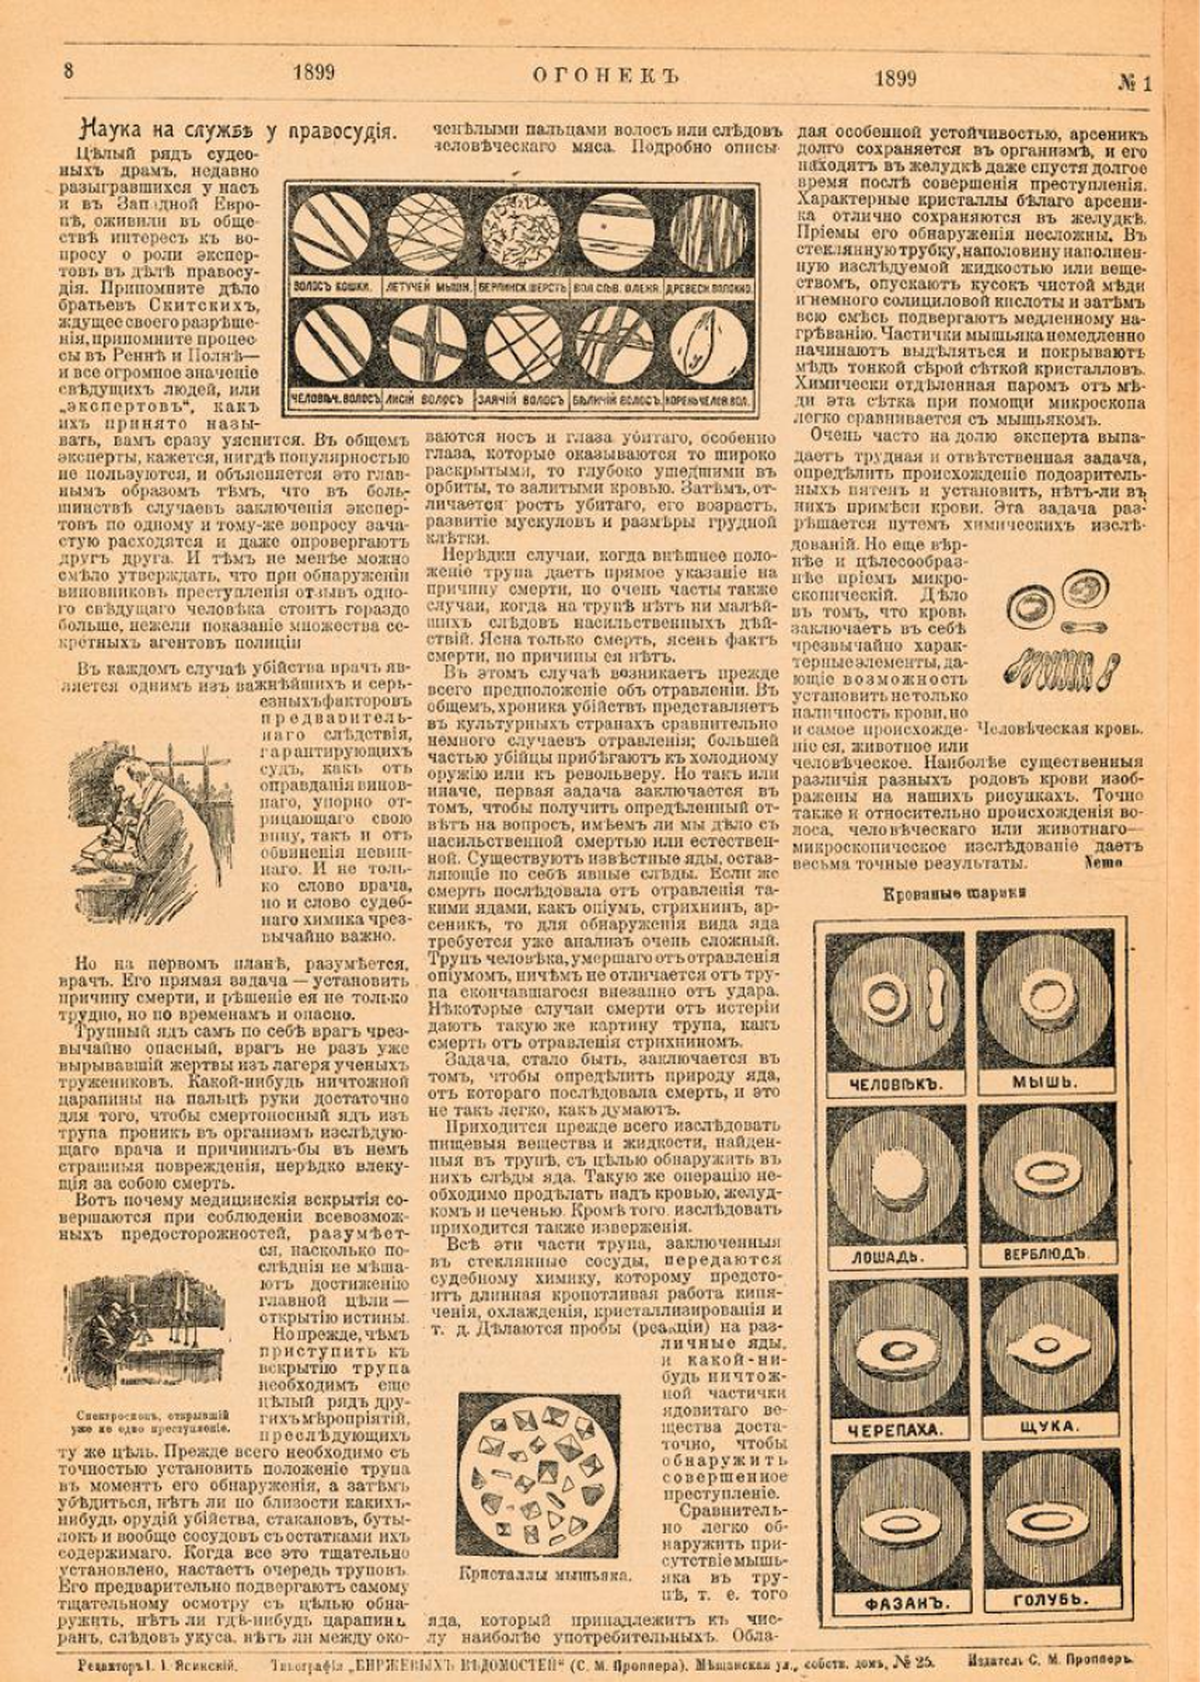 Инфографика с изображением красных кровяных телец (эритроцитов) в первом номере журнала «Огонек» в 1899